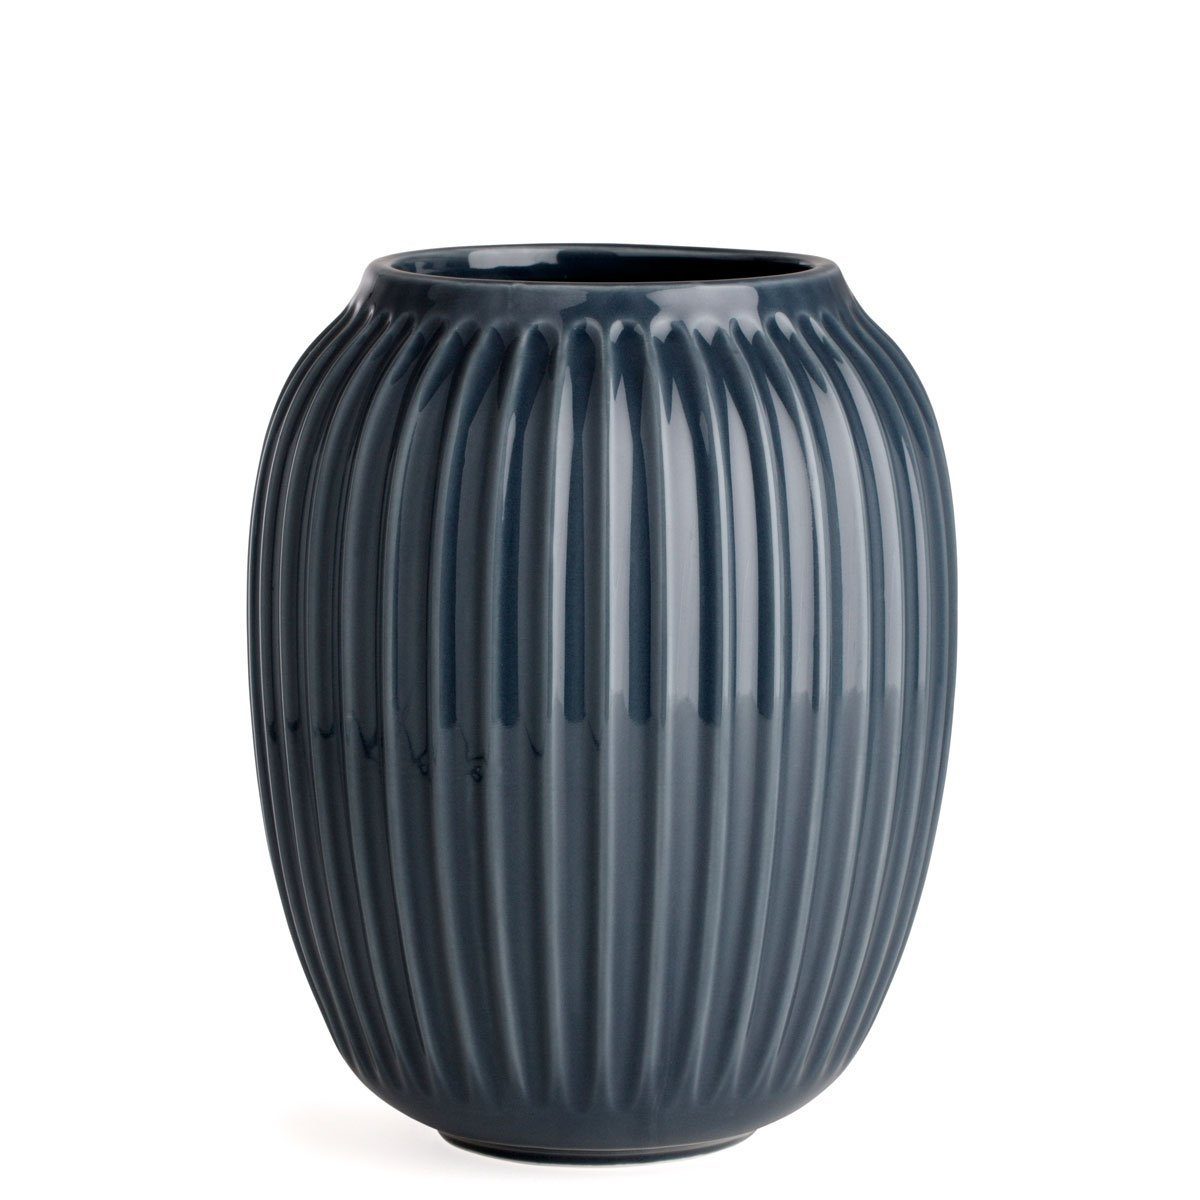 Kähler Tischvase Hammershøi 21 cm; Bauchige Vase mit Rillen-Struktur; Designer Dekovase Anthrazit